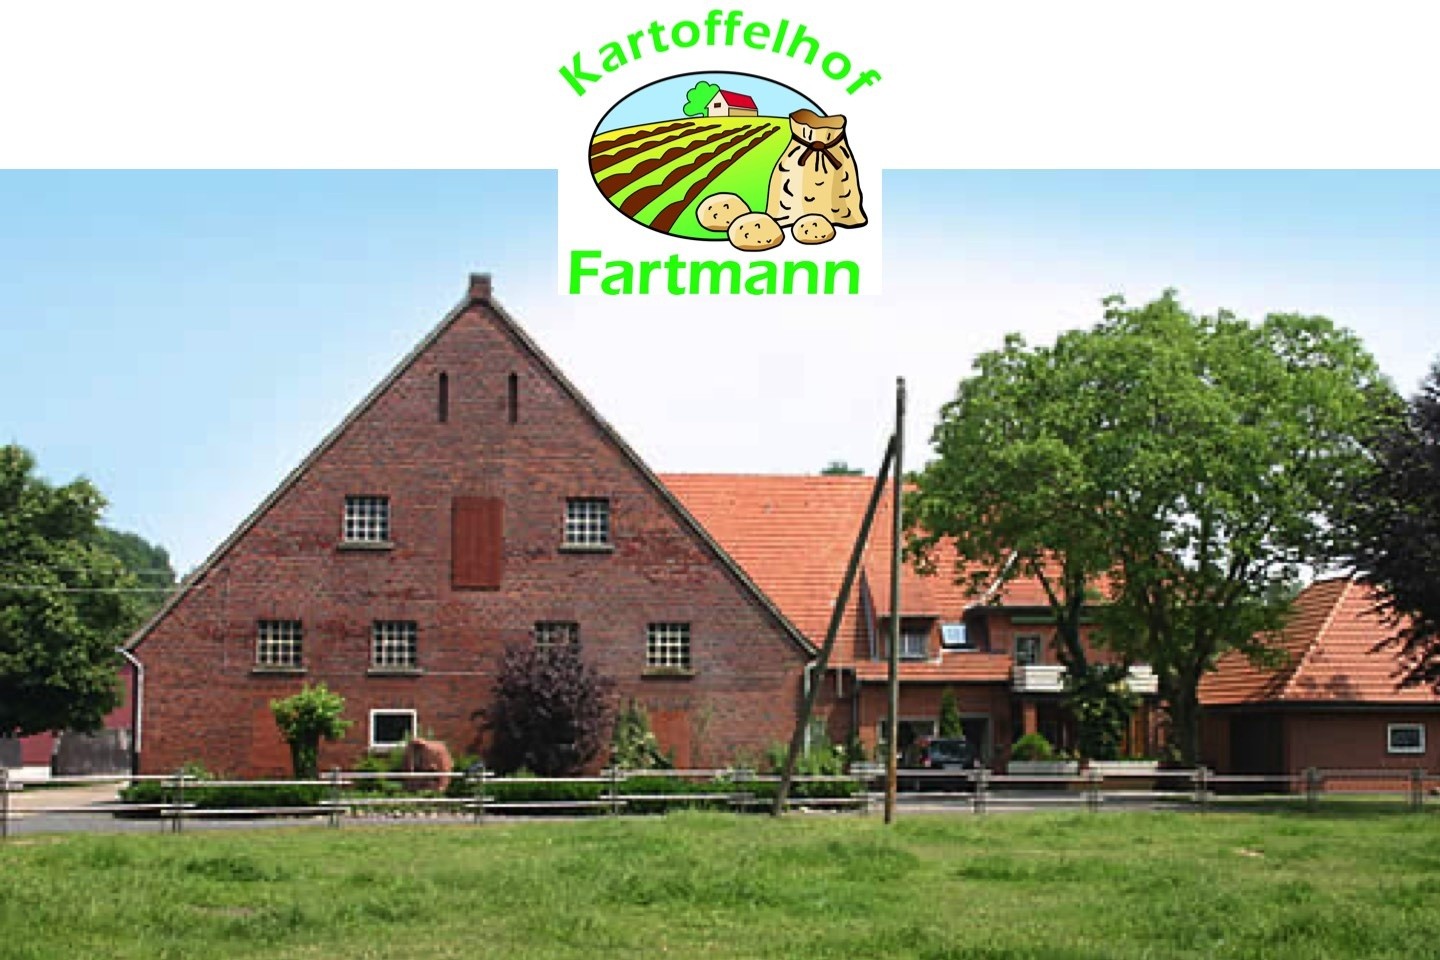 Kartoffelhof Fartmann,Kartoffelhof,Fartmann,Vohren,Warendorf,Ferienwohnung,Reibeplätzchen,